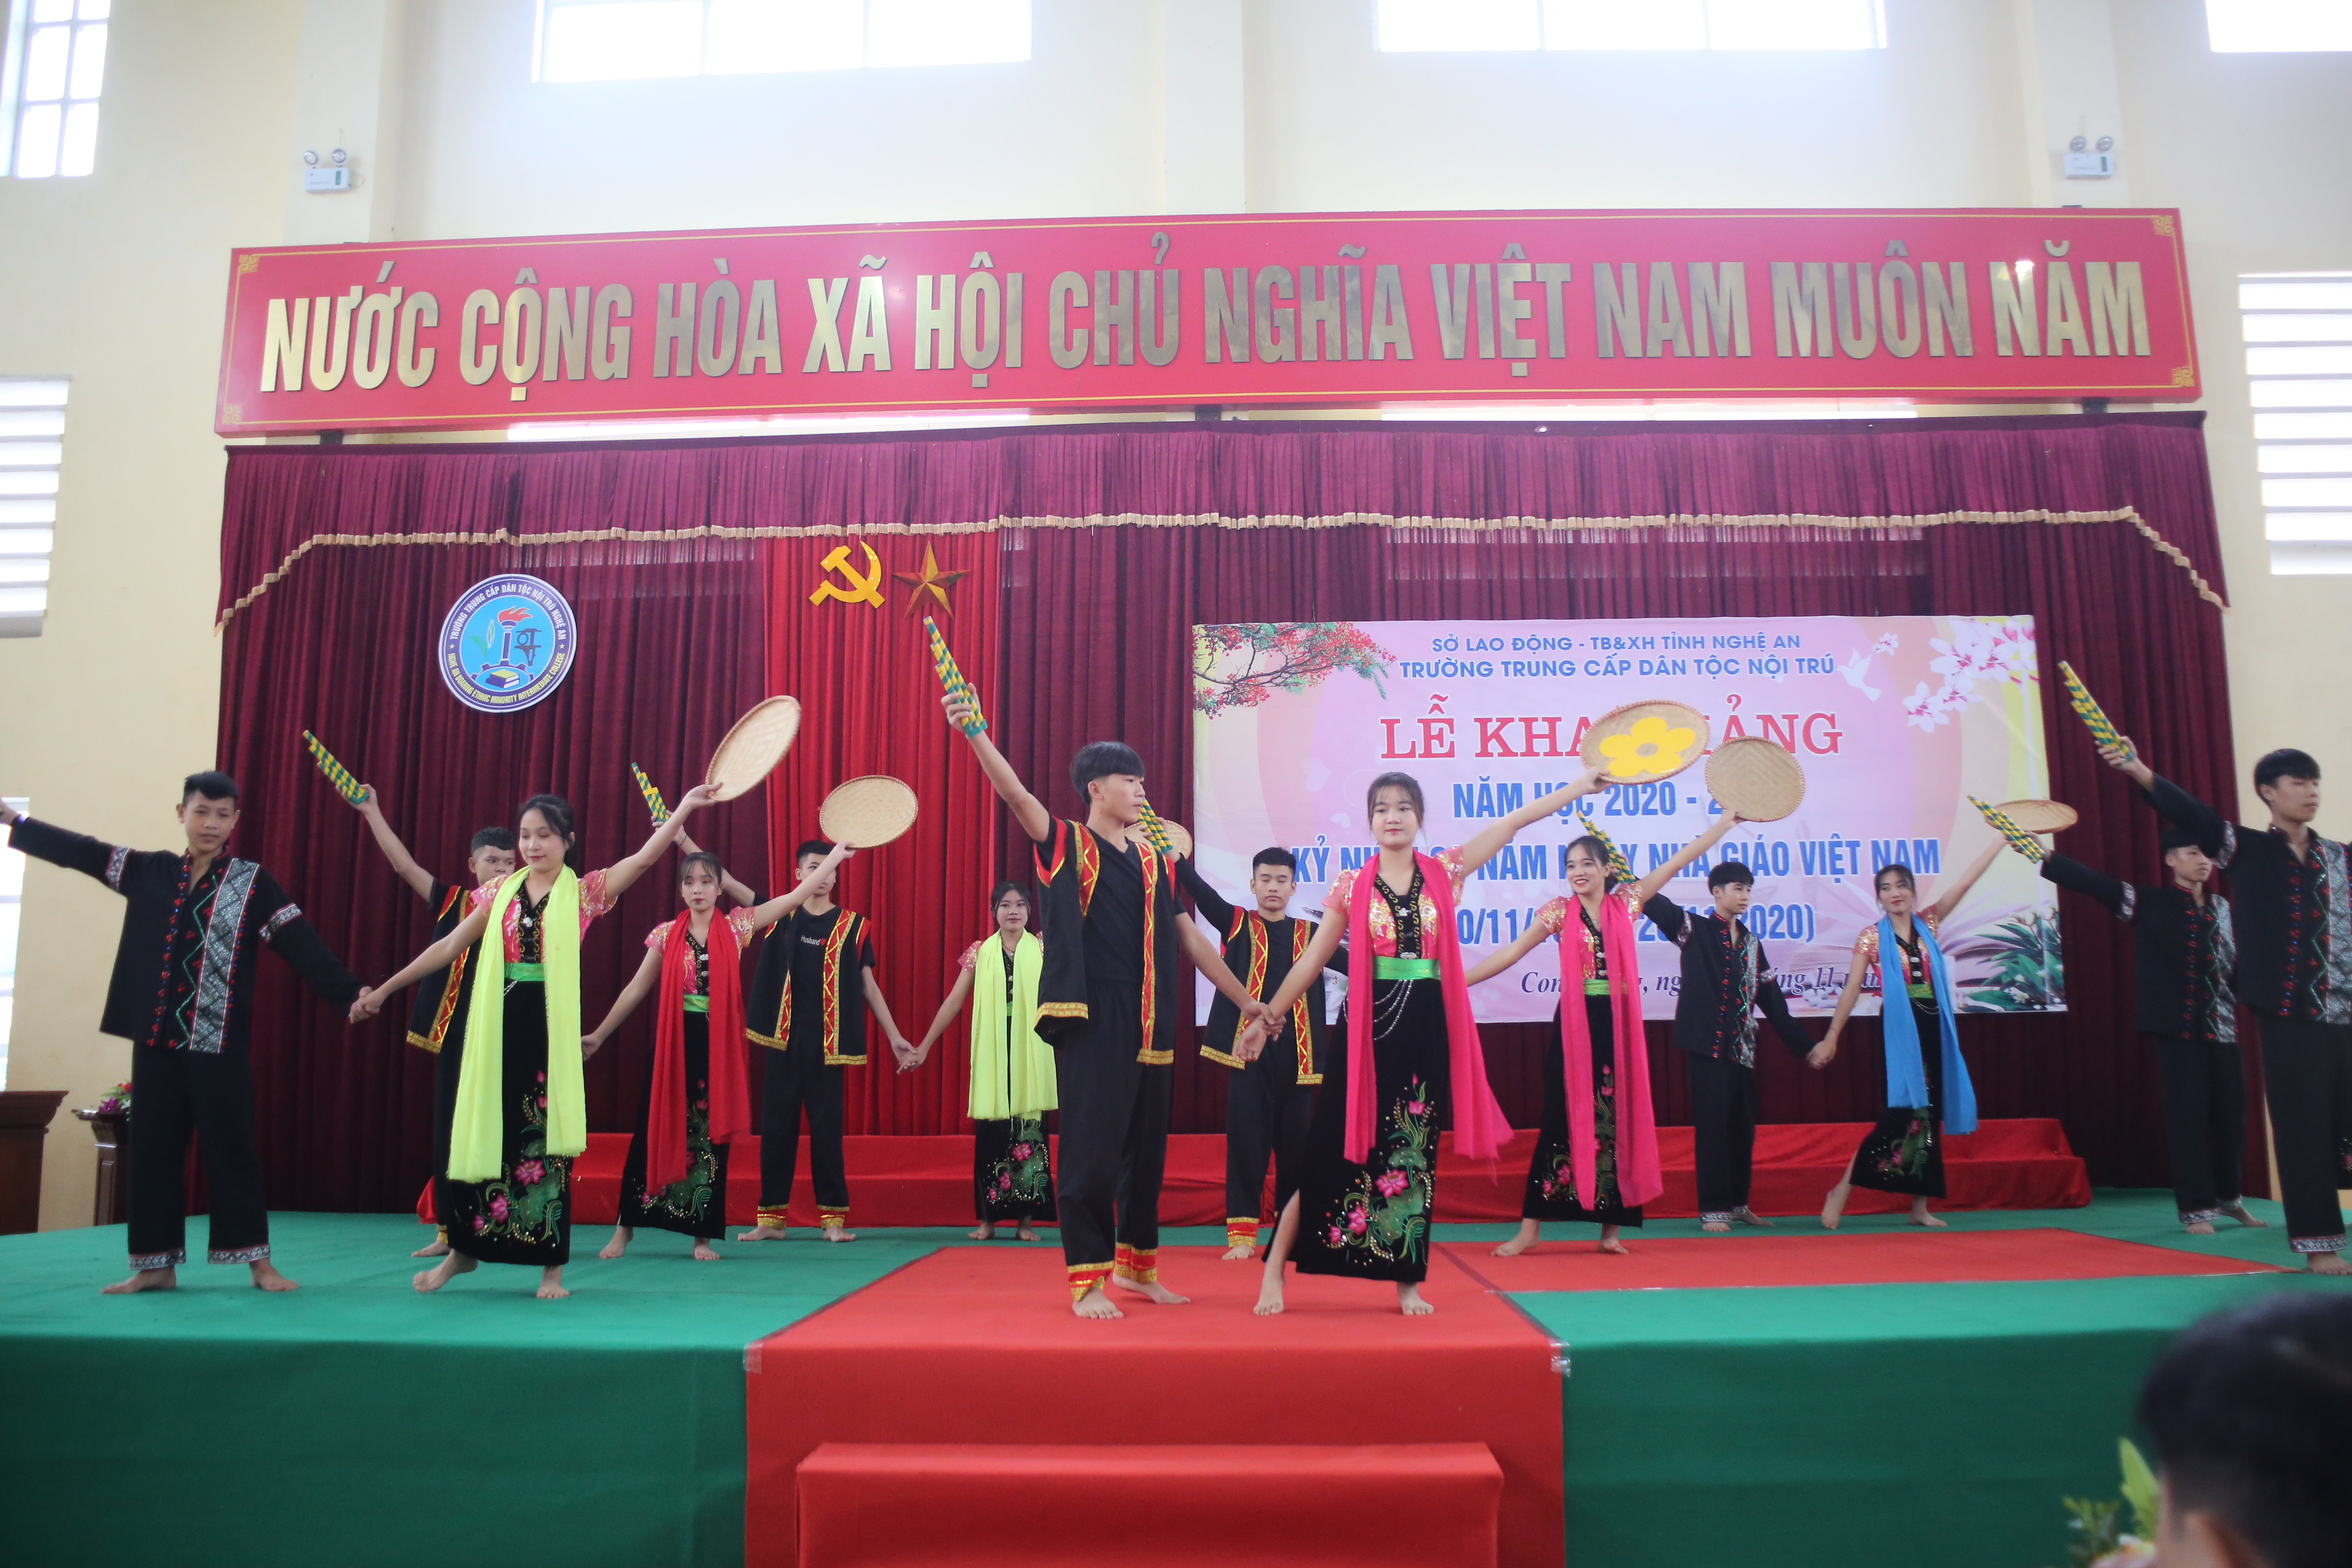 Tại buổi lễ học sinh nhà trường đã trình diễn nhiều tiết mục văn nghệ đặc sắc, đậm đà bản sắc dân tộc vùng miền Tây xứ Nghệ. Ảnh: Thanh Nga